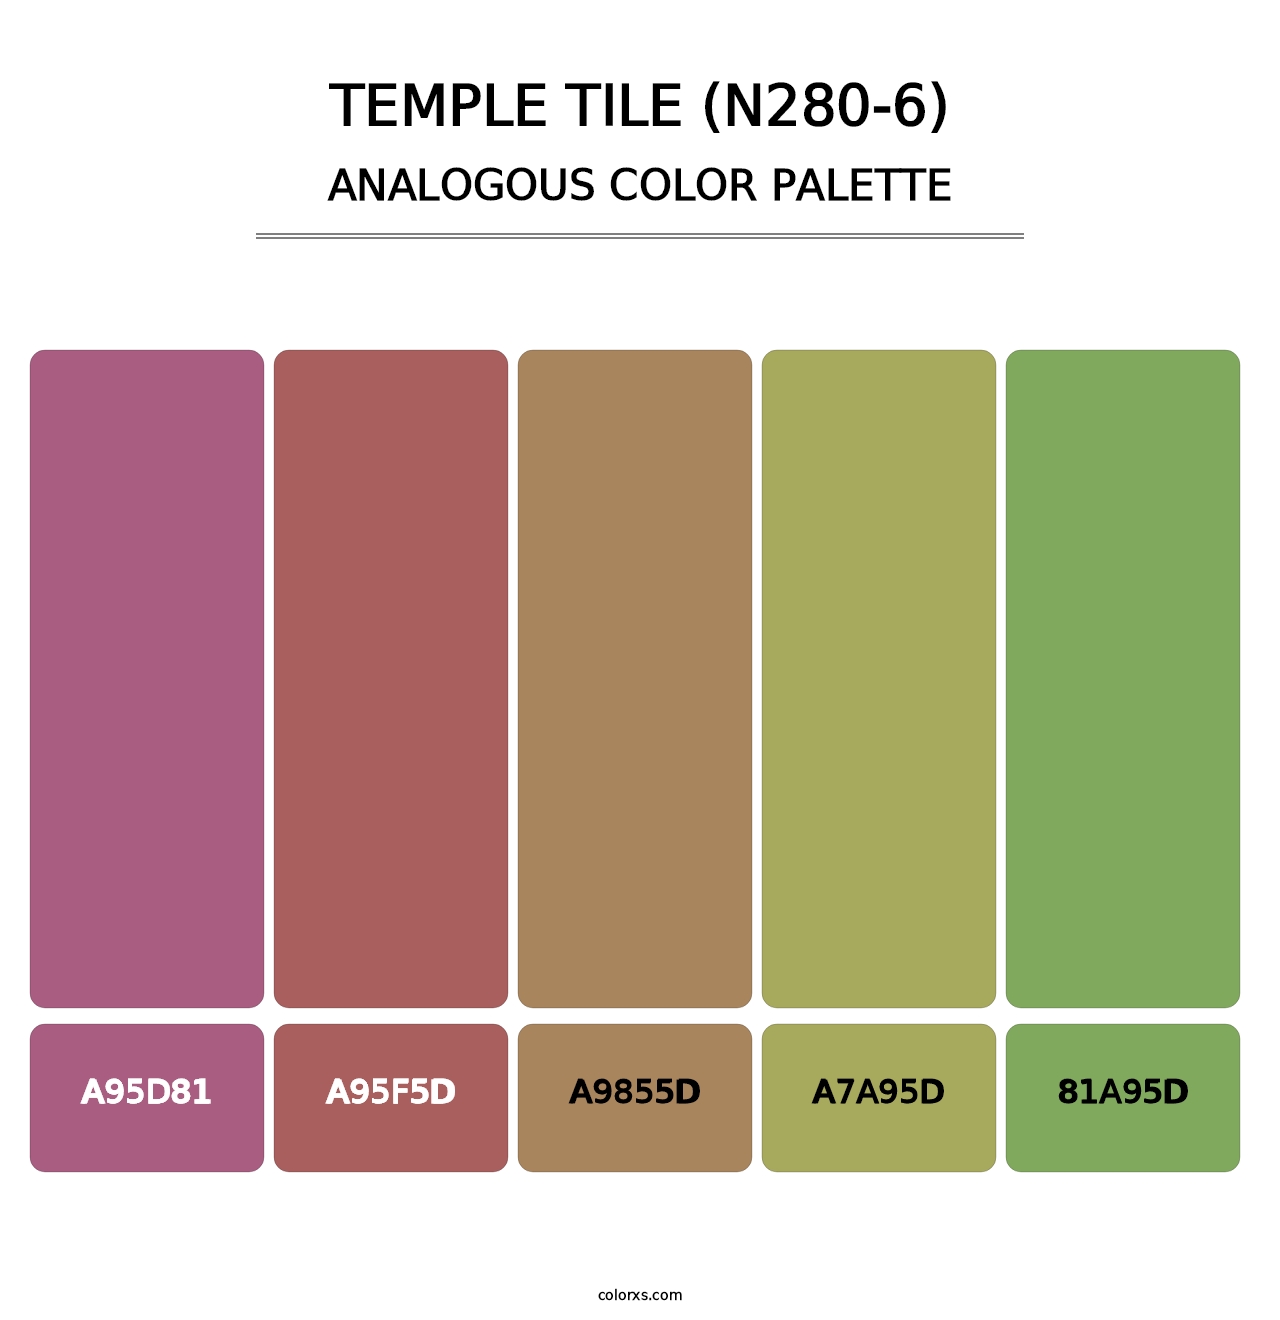 Temple Tile (N280-6) - Analogous Color Palette